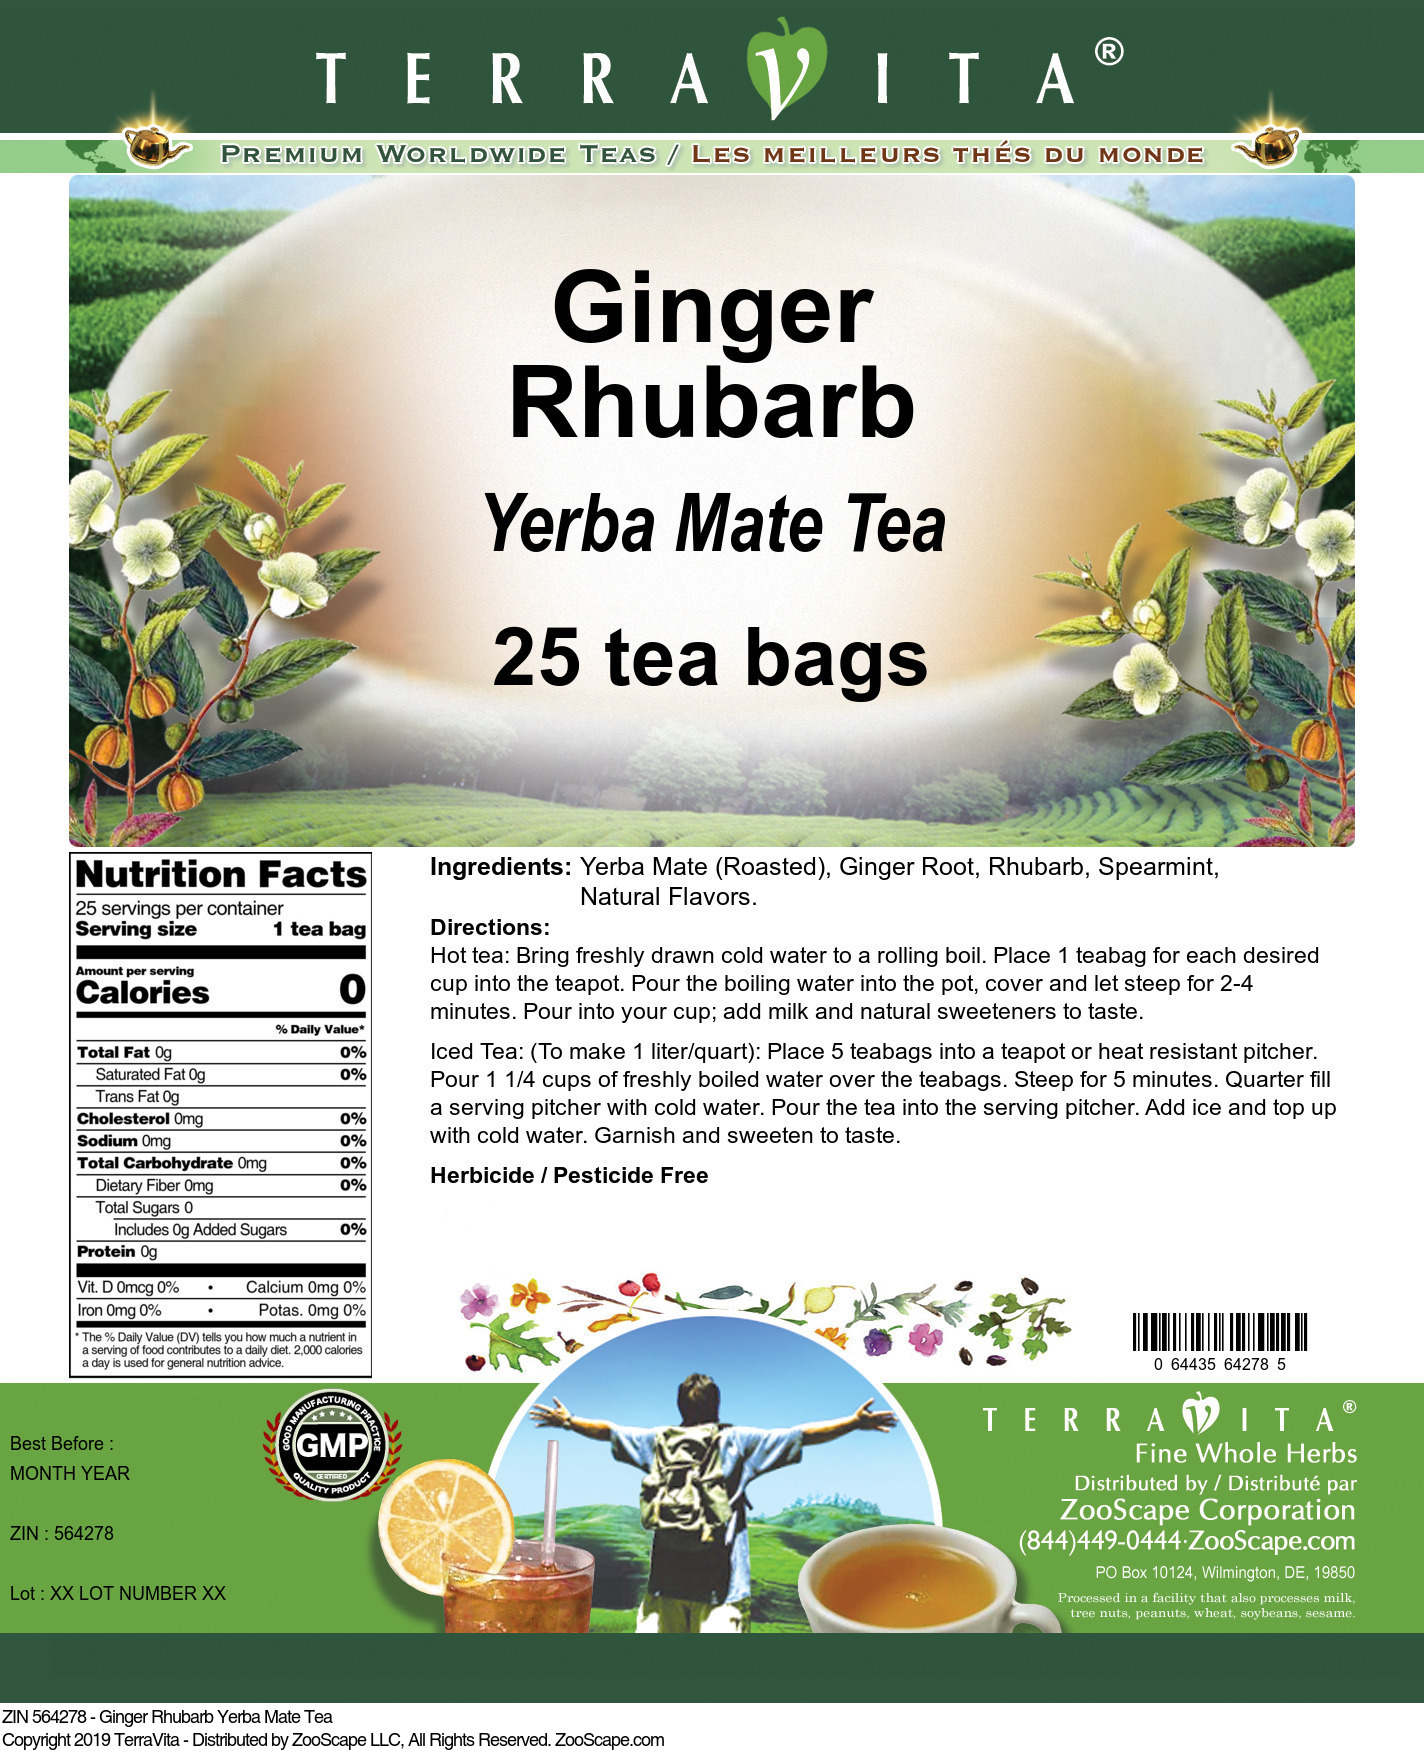 Ginger Rhubarb Yerba Mate Tea - Label